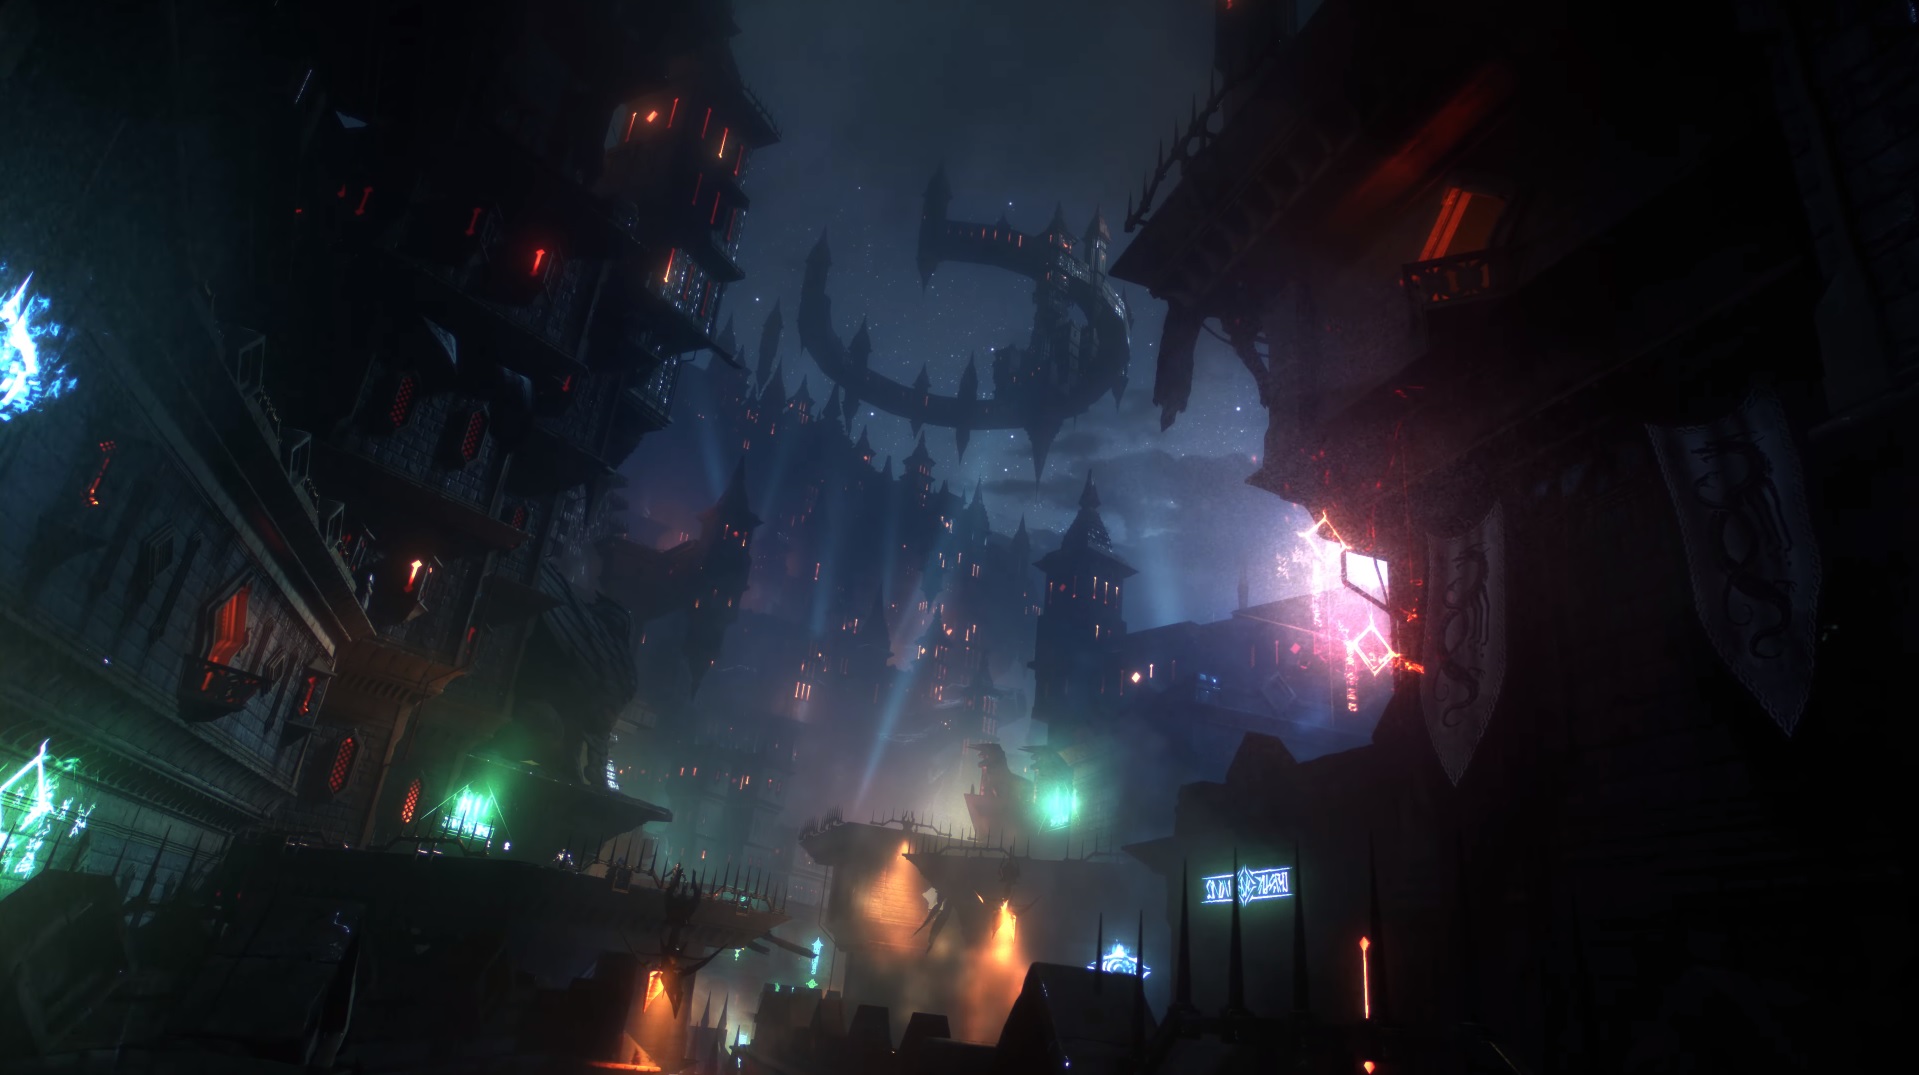 عصر اژدها: Dreadwolf - شهر Minrathous در شب